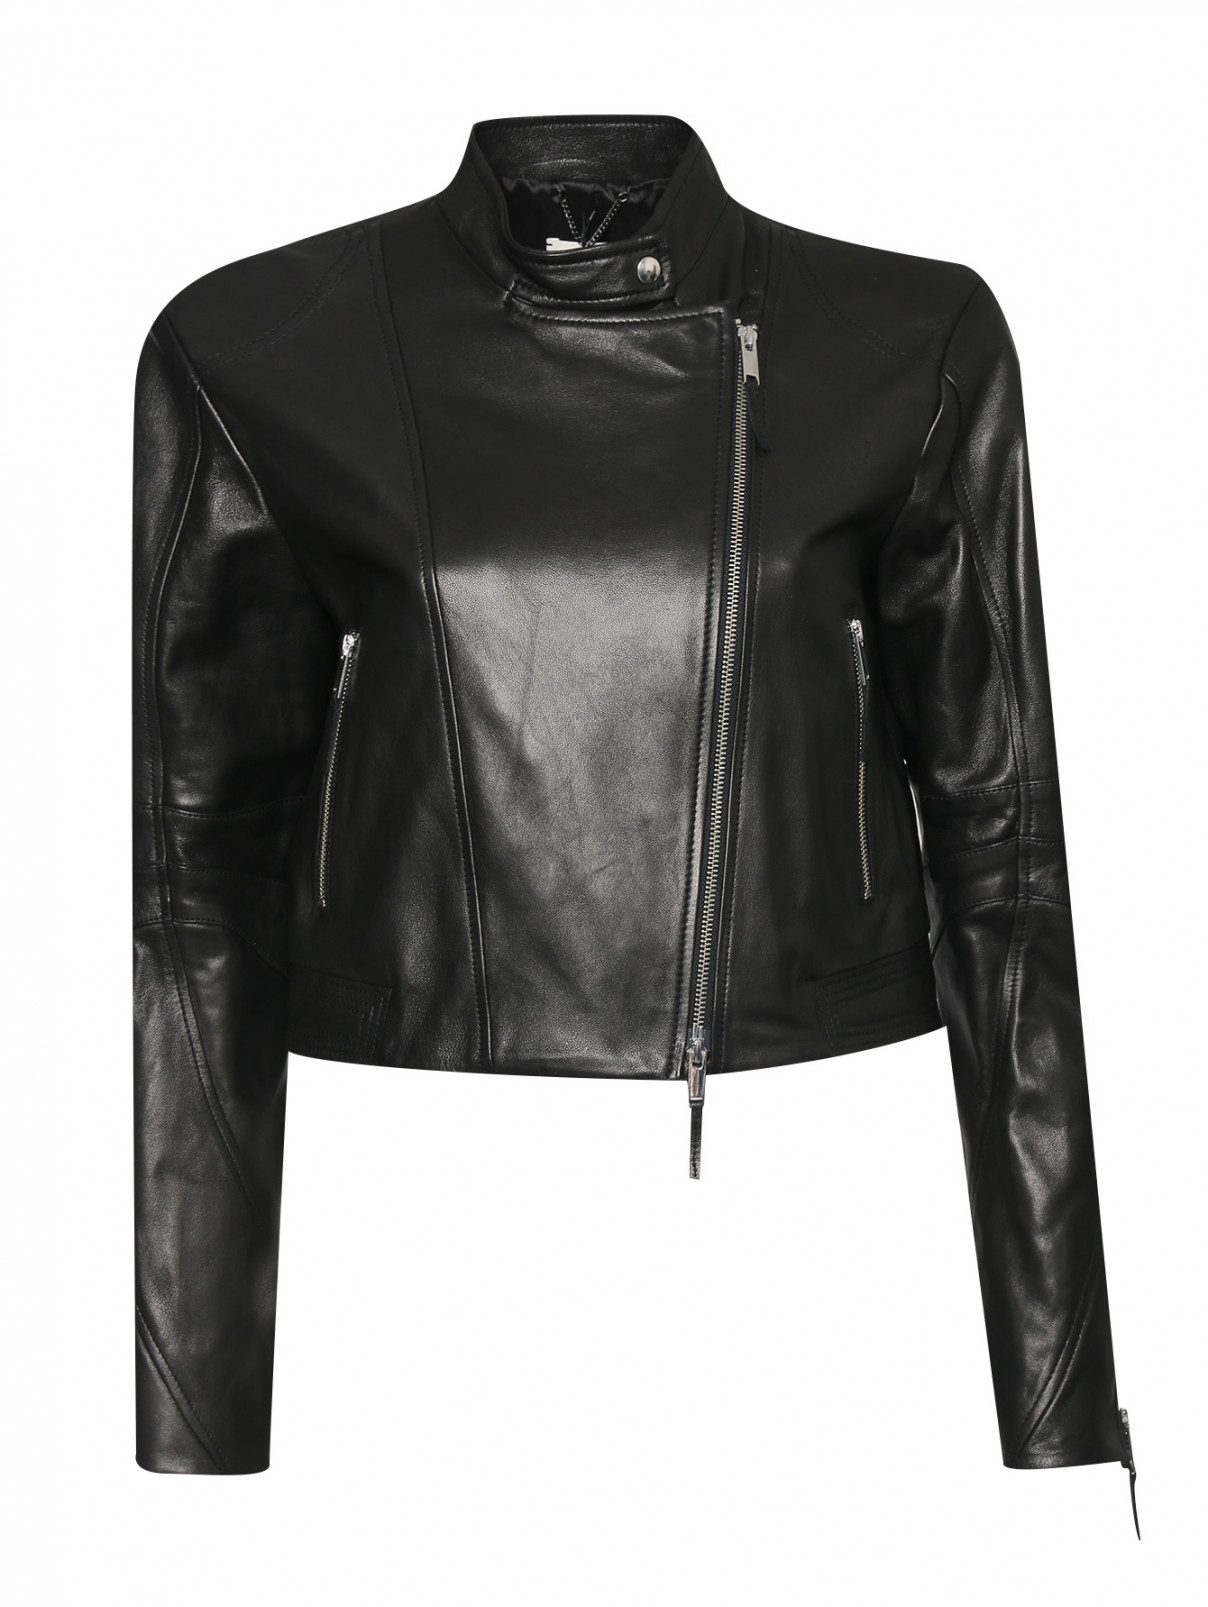 Куртка из гладкой кожи с металлической фурнитурой Dorothee Schumacher  –  Общий вид  – Цвет:  Черный